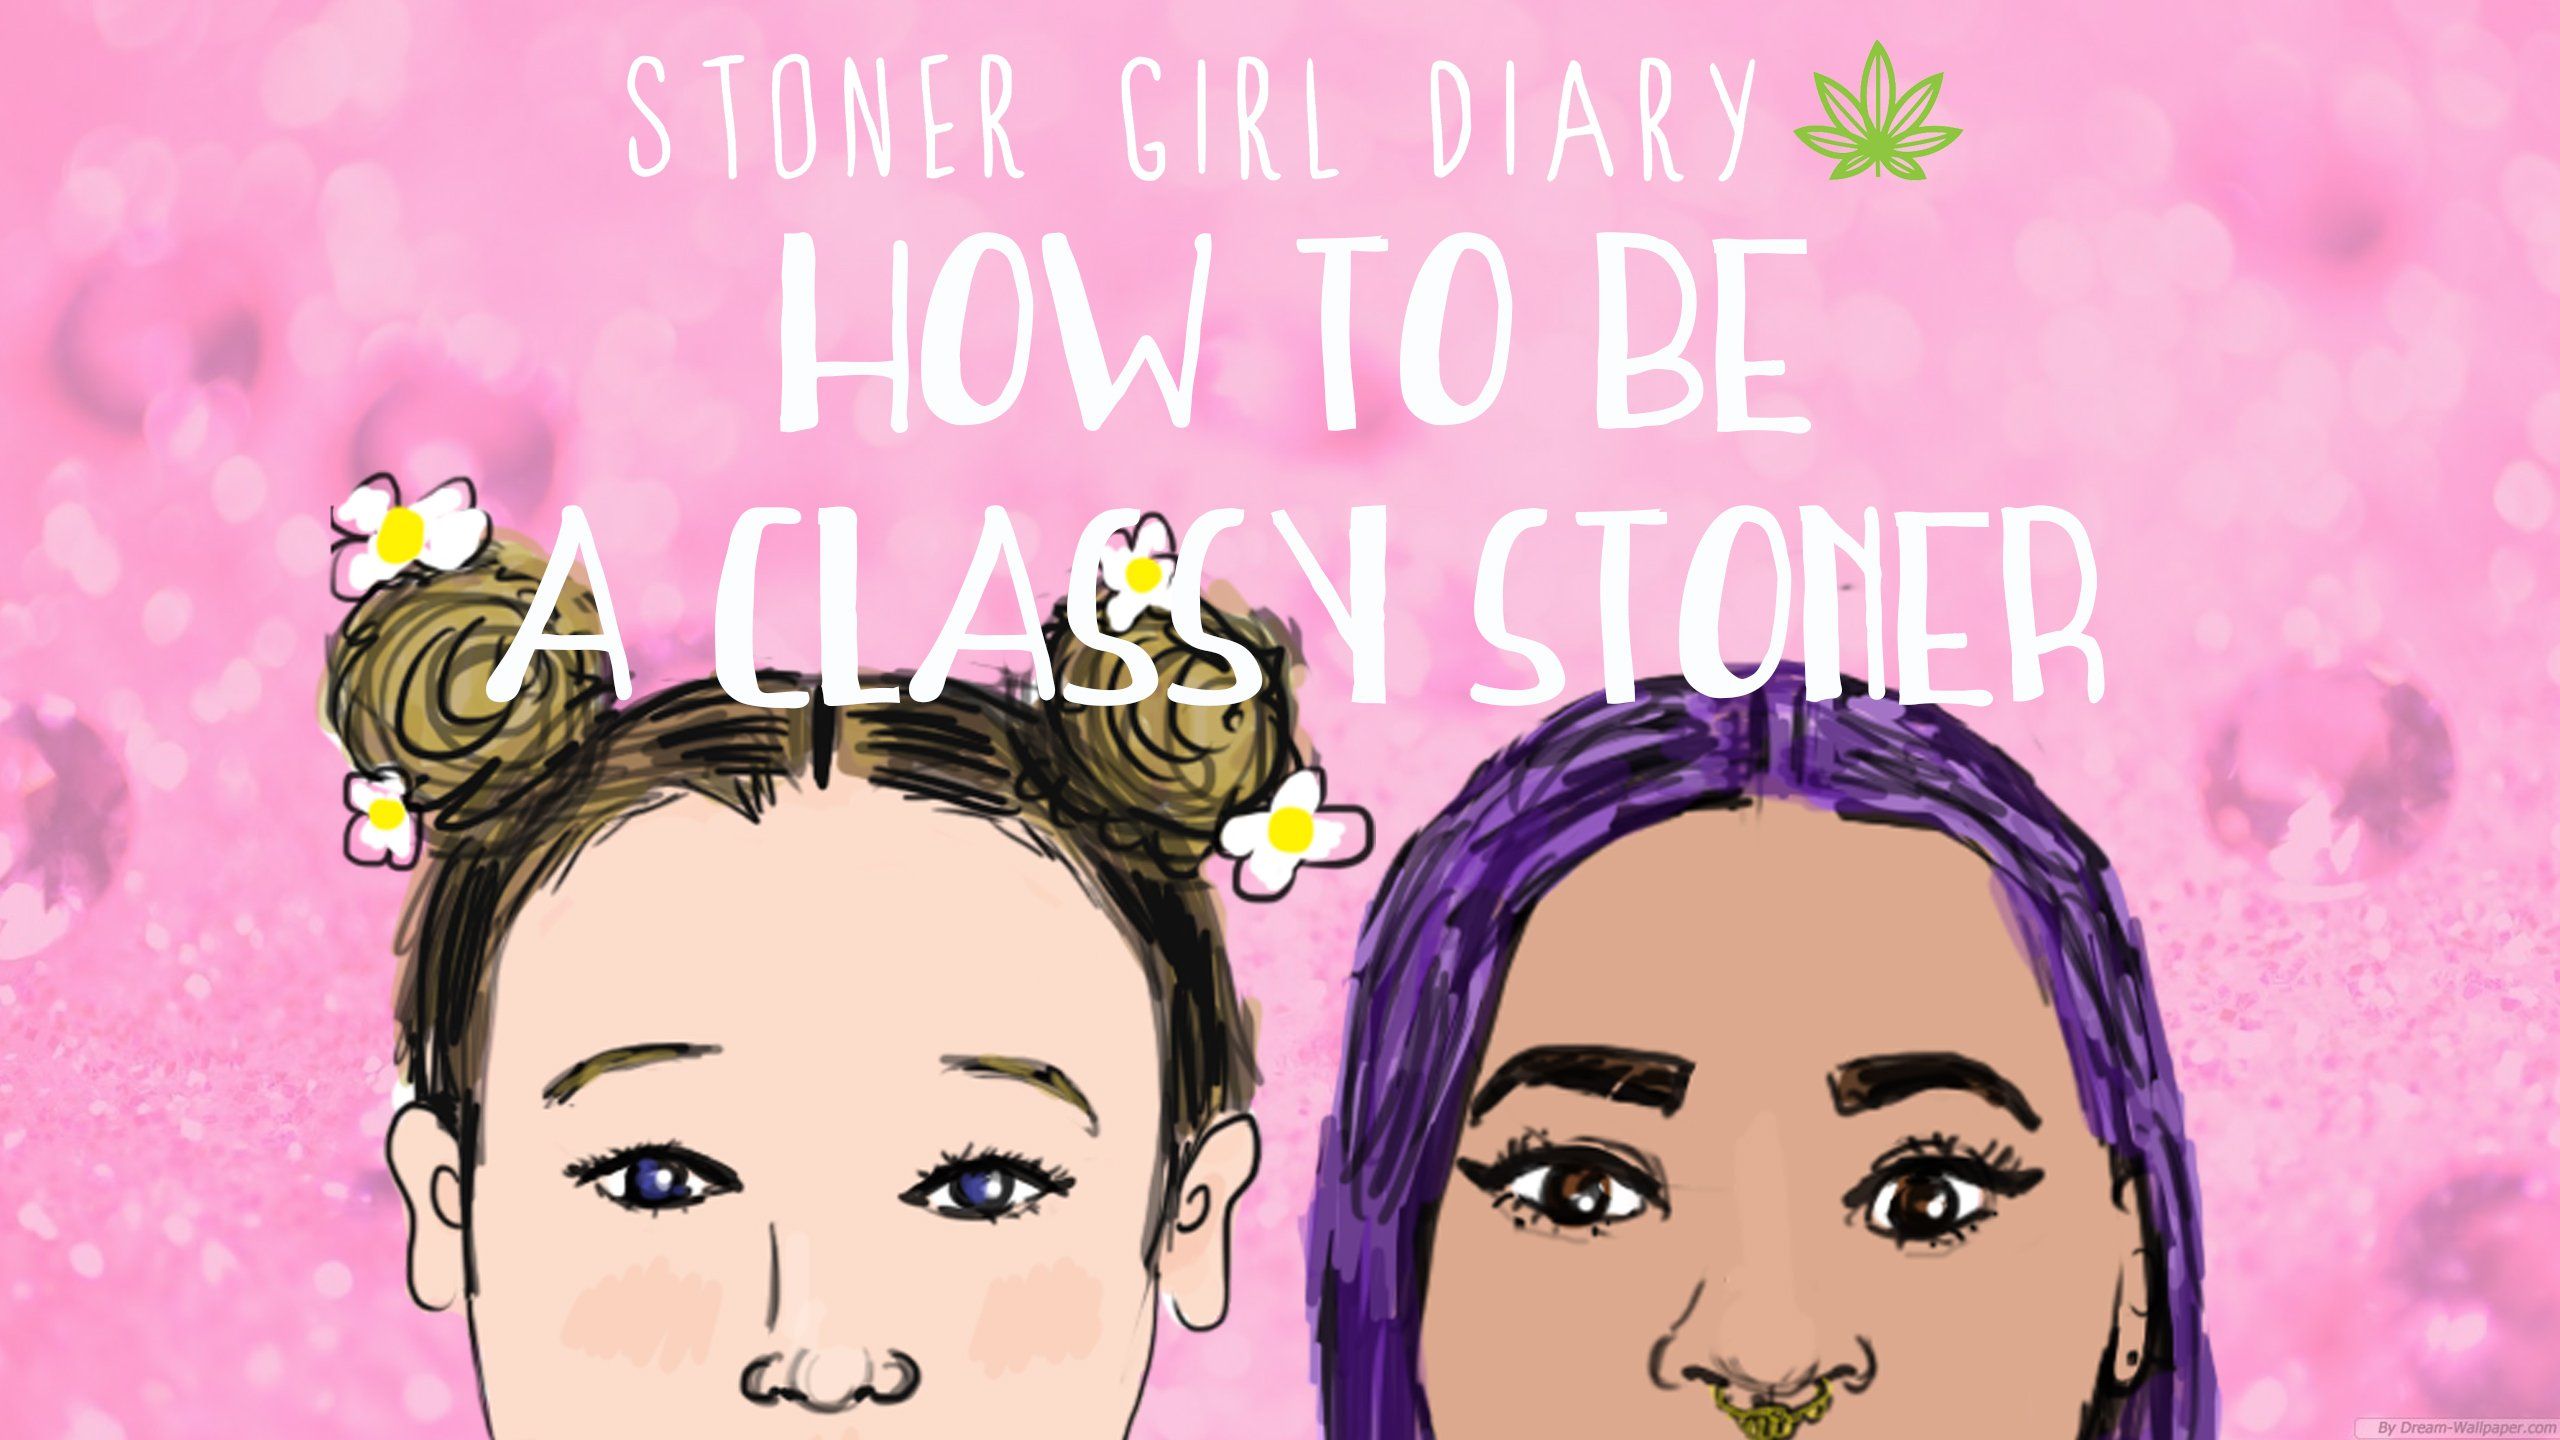 HOW TO BE A CLASSY STONER. Stoner Girl Diary